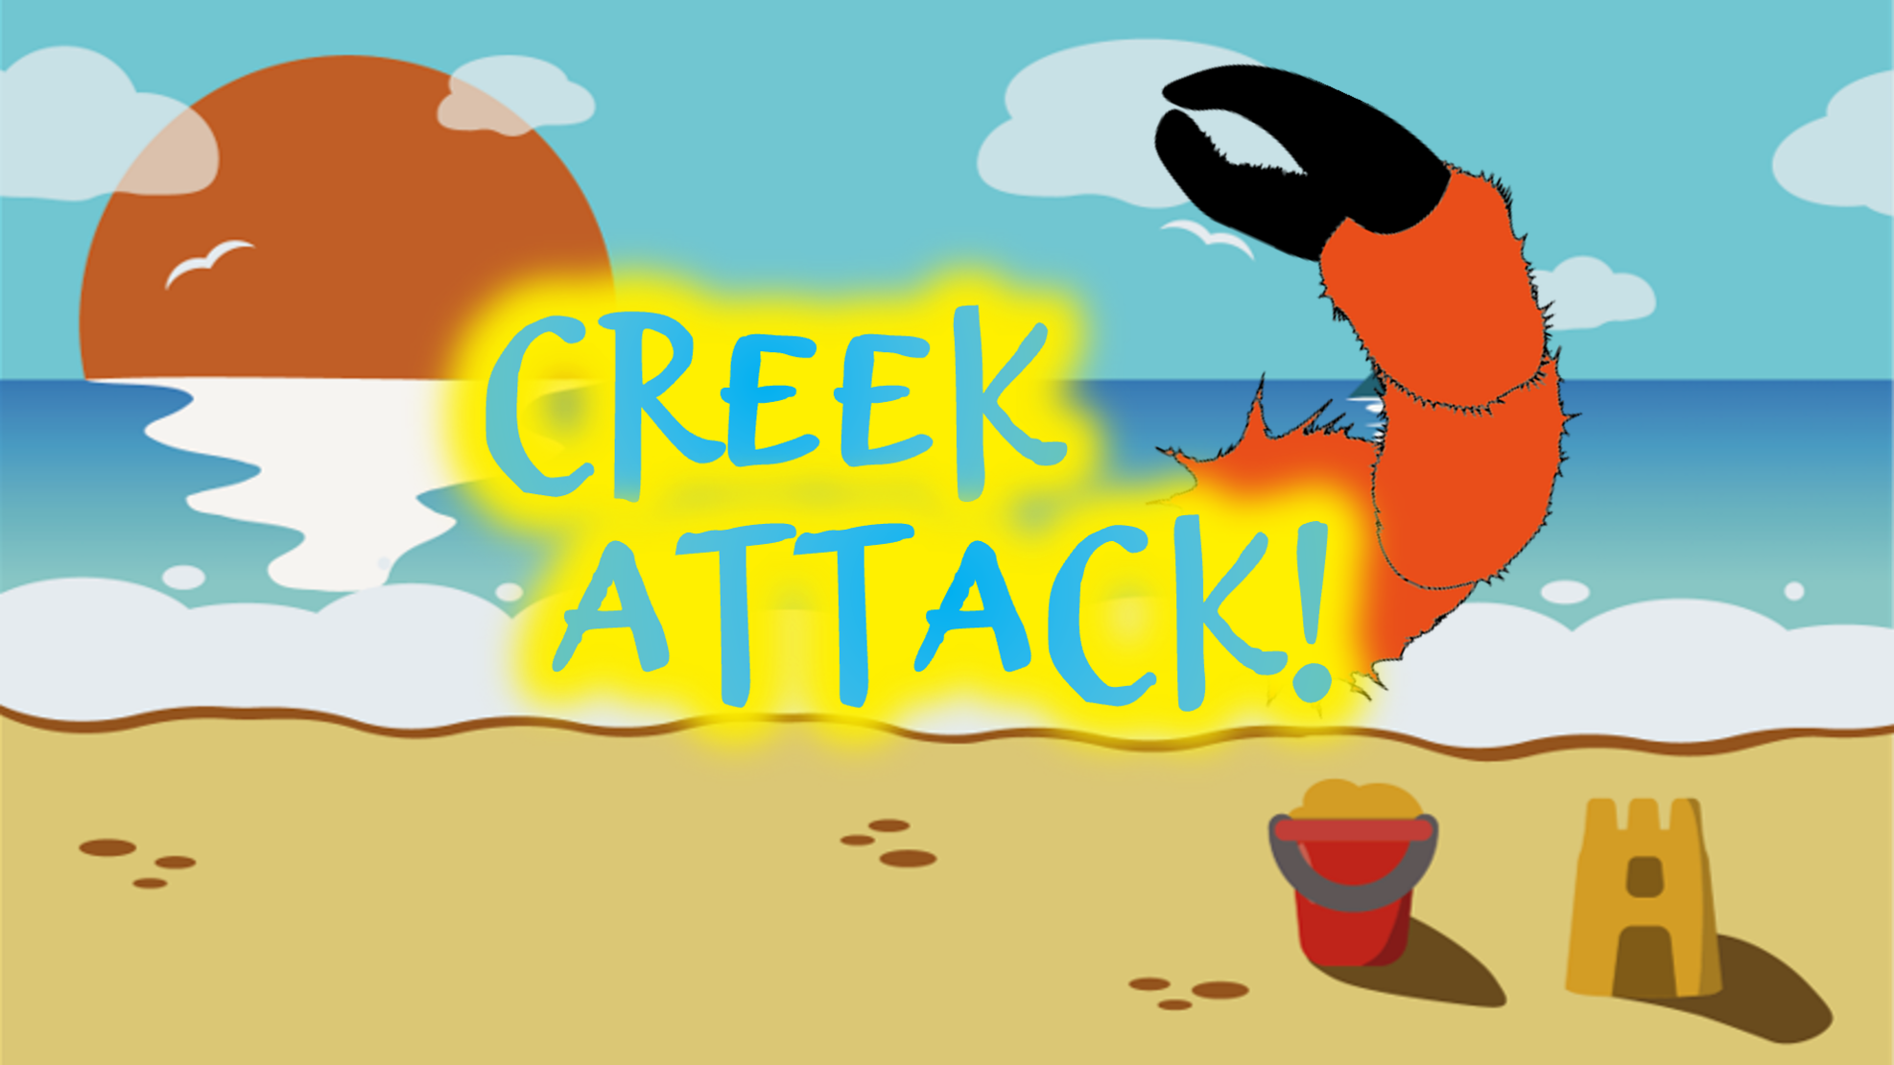 Creek Attack!